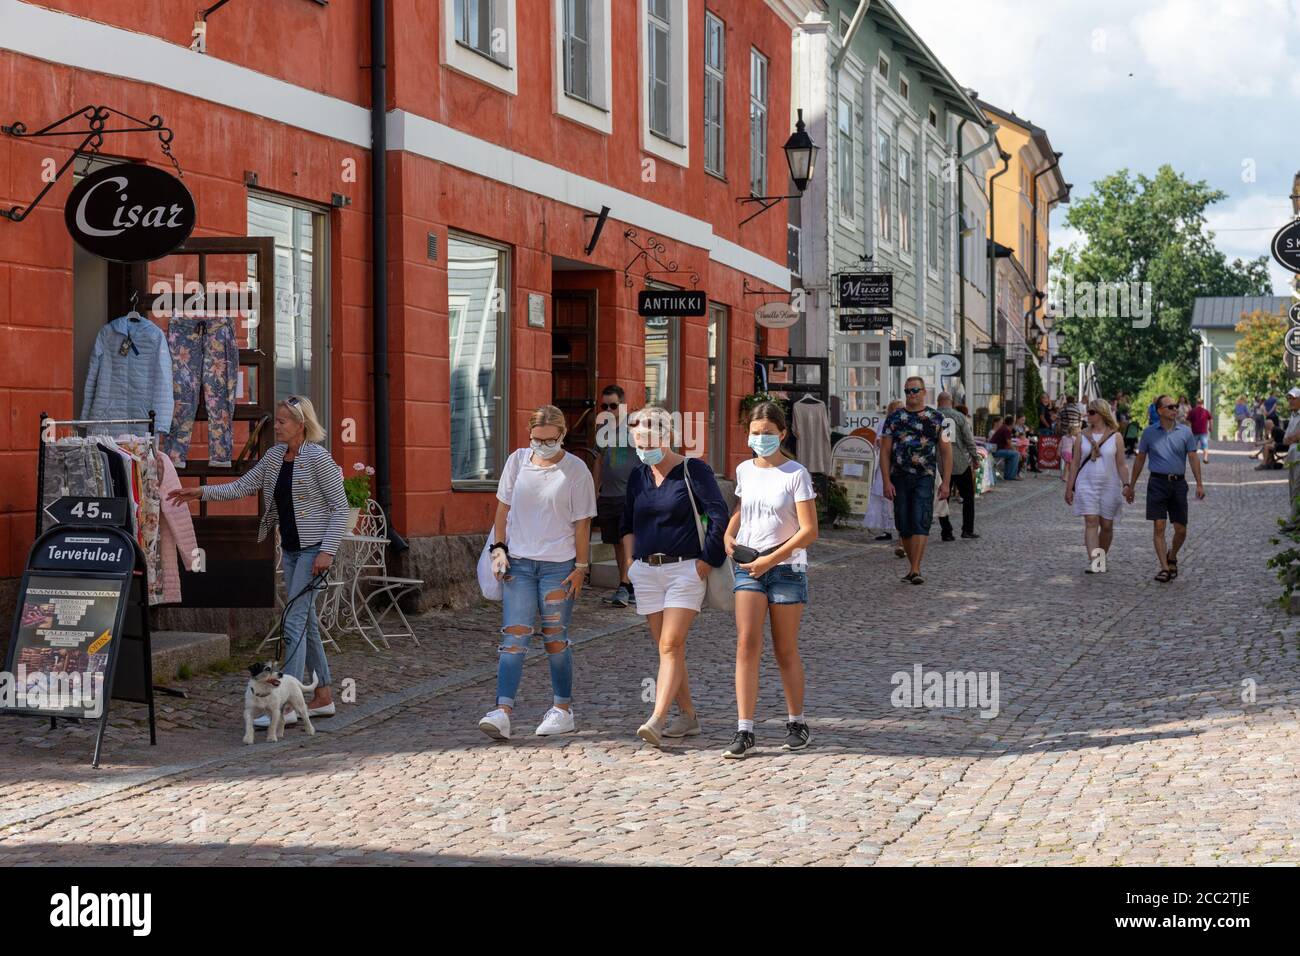 Masque portant des touristes se promenant dans la rue pavée de la vieille ville de Porvoo, en Finlande, pendant la pandémie COVID-19 Banque D'Images